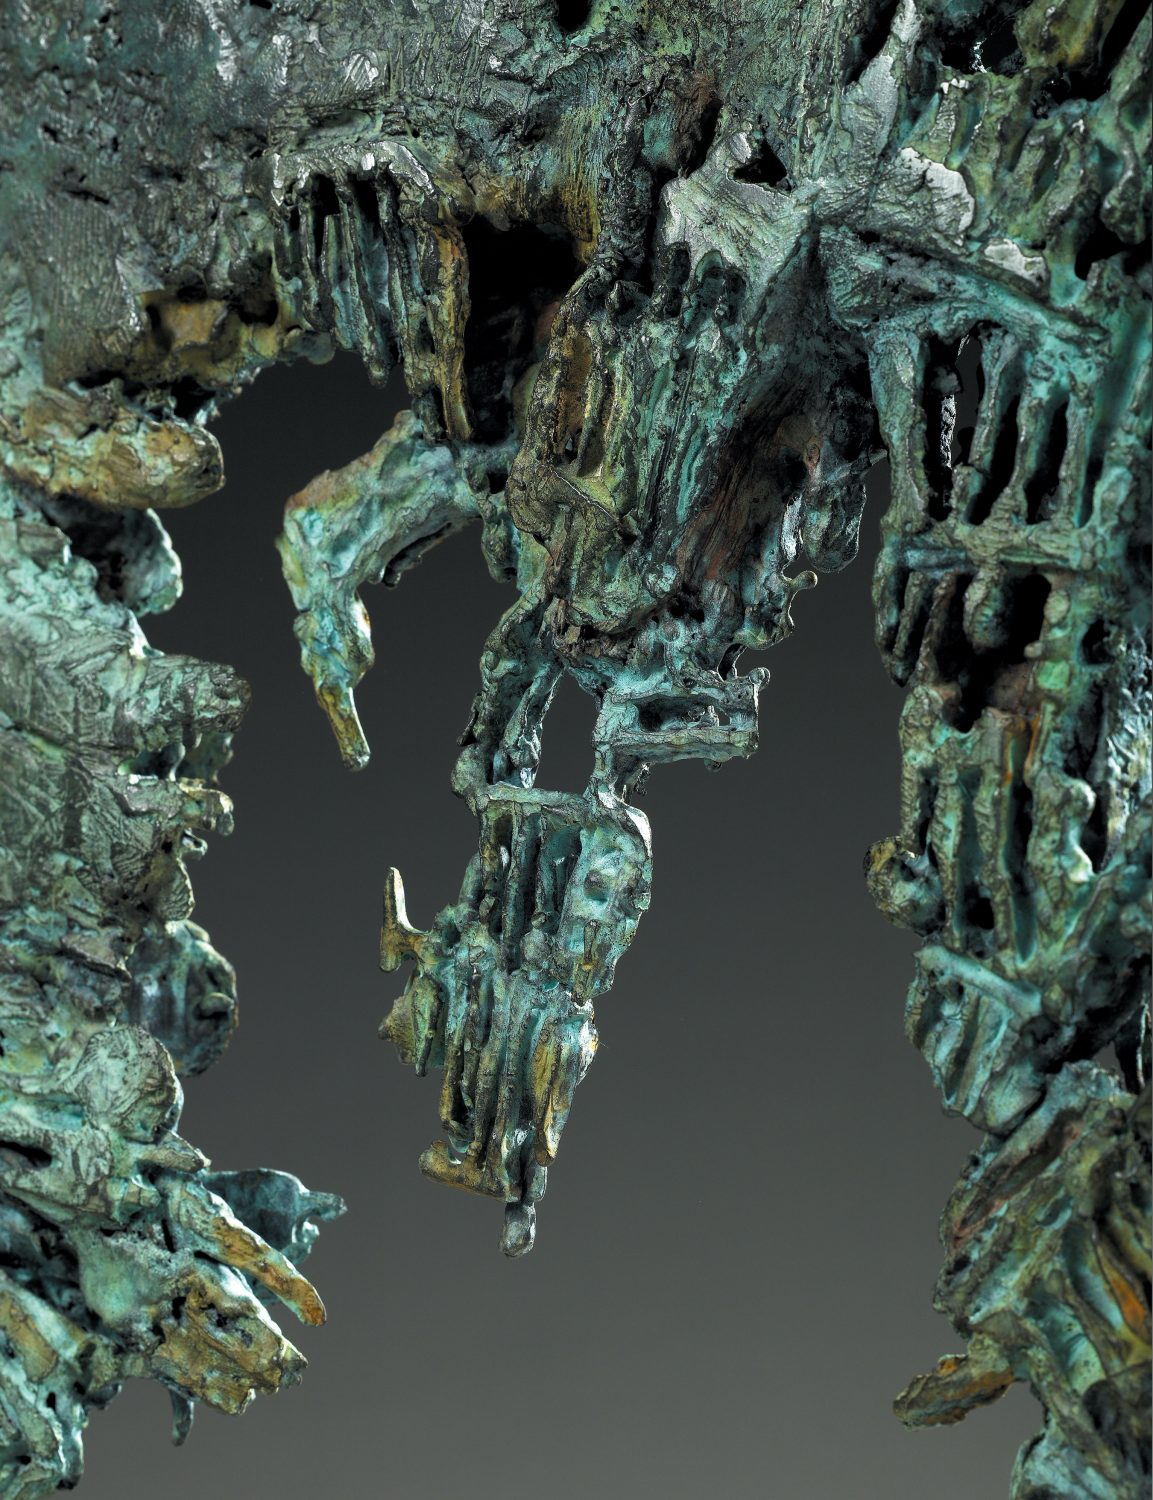 alien monstre crevette bronze sculpture art créature espace